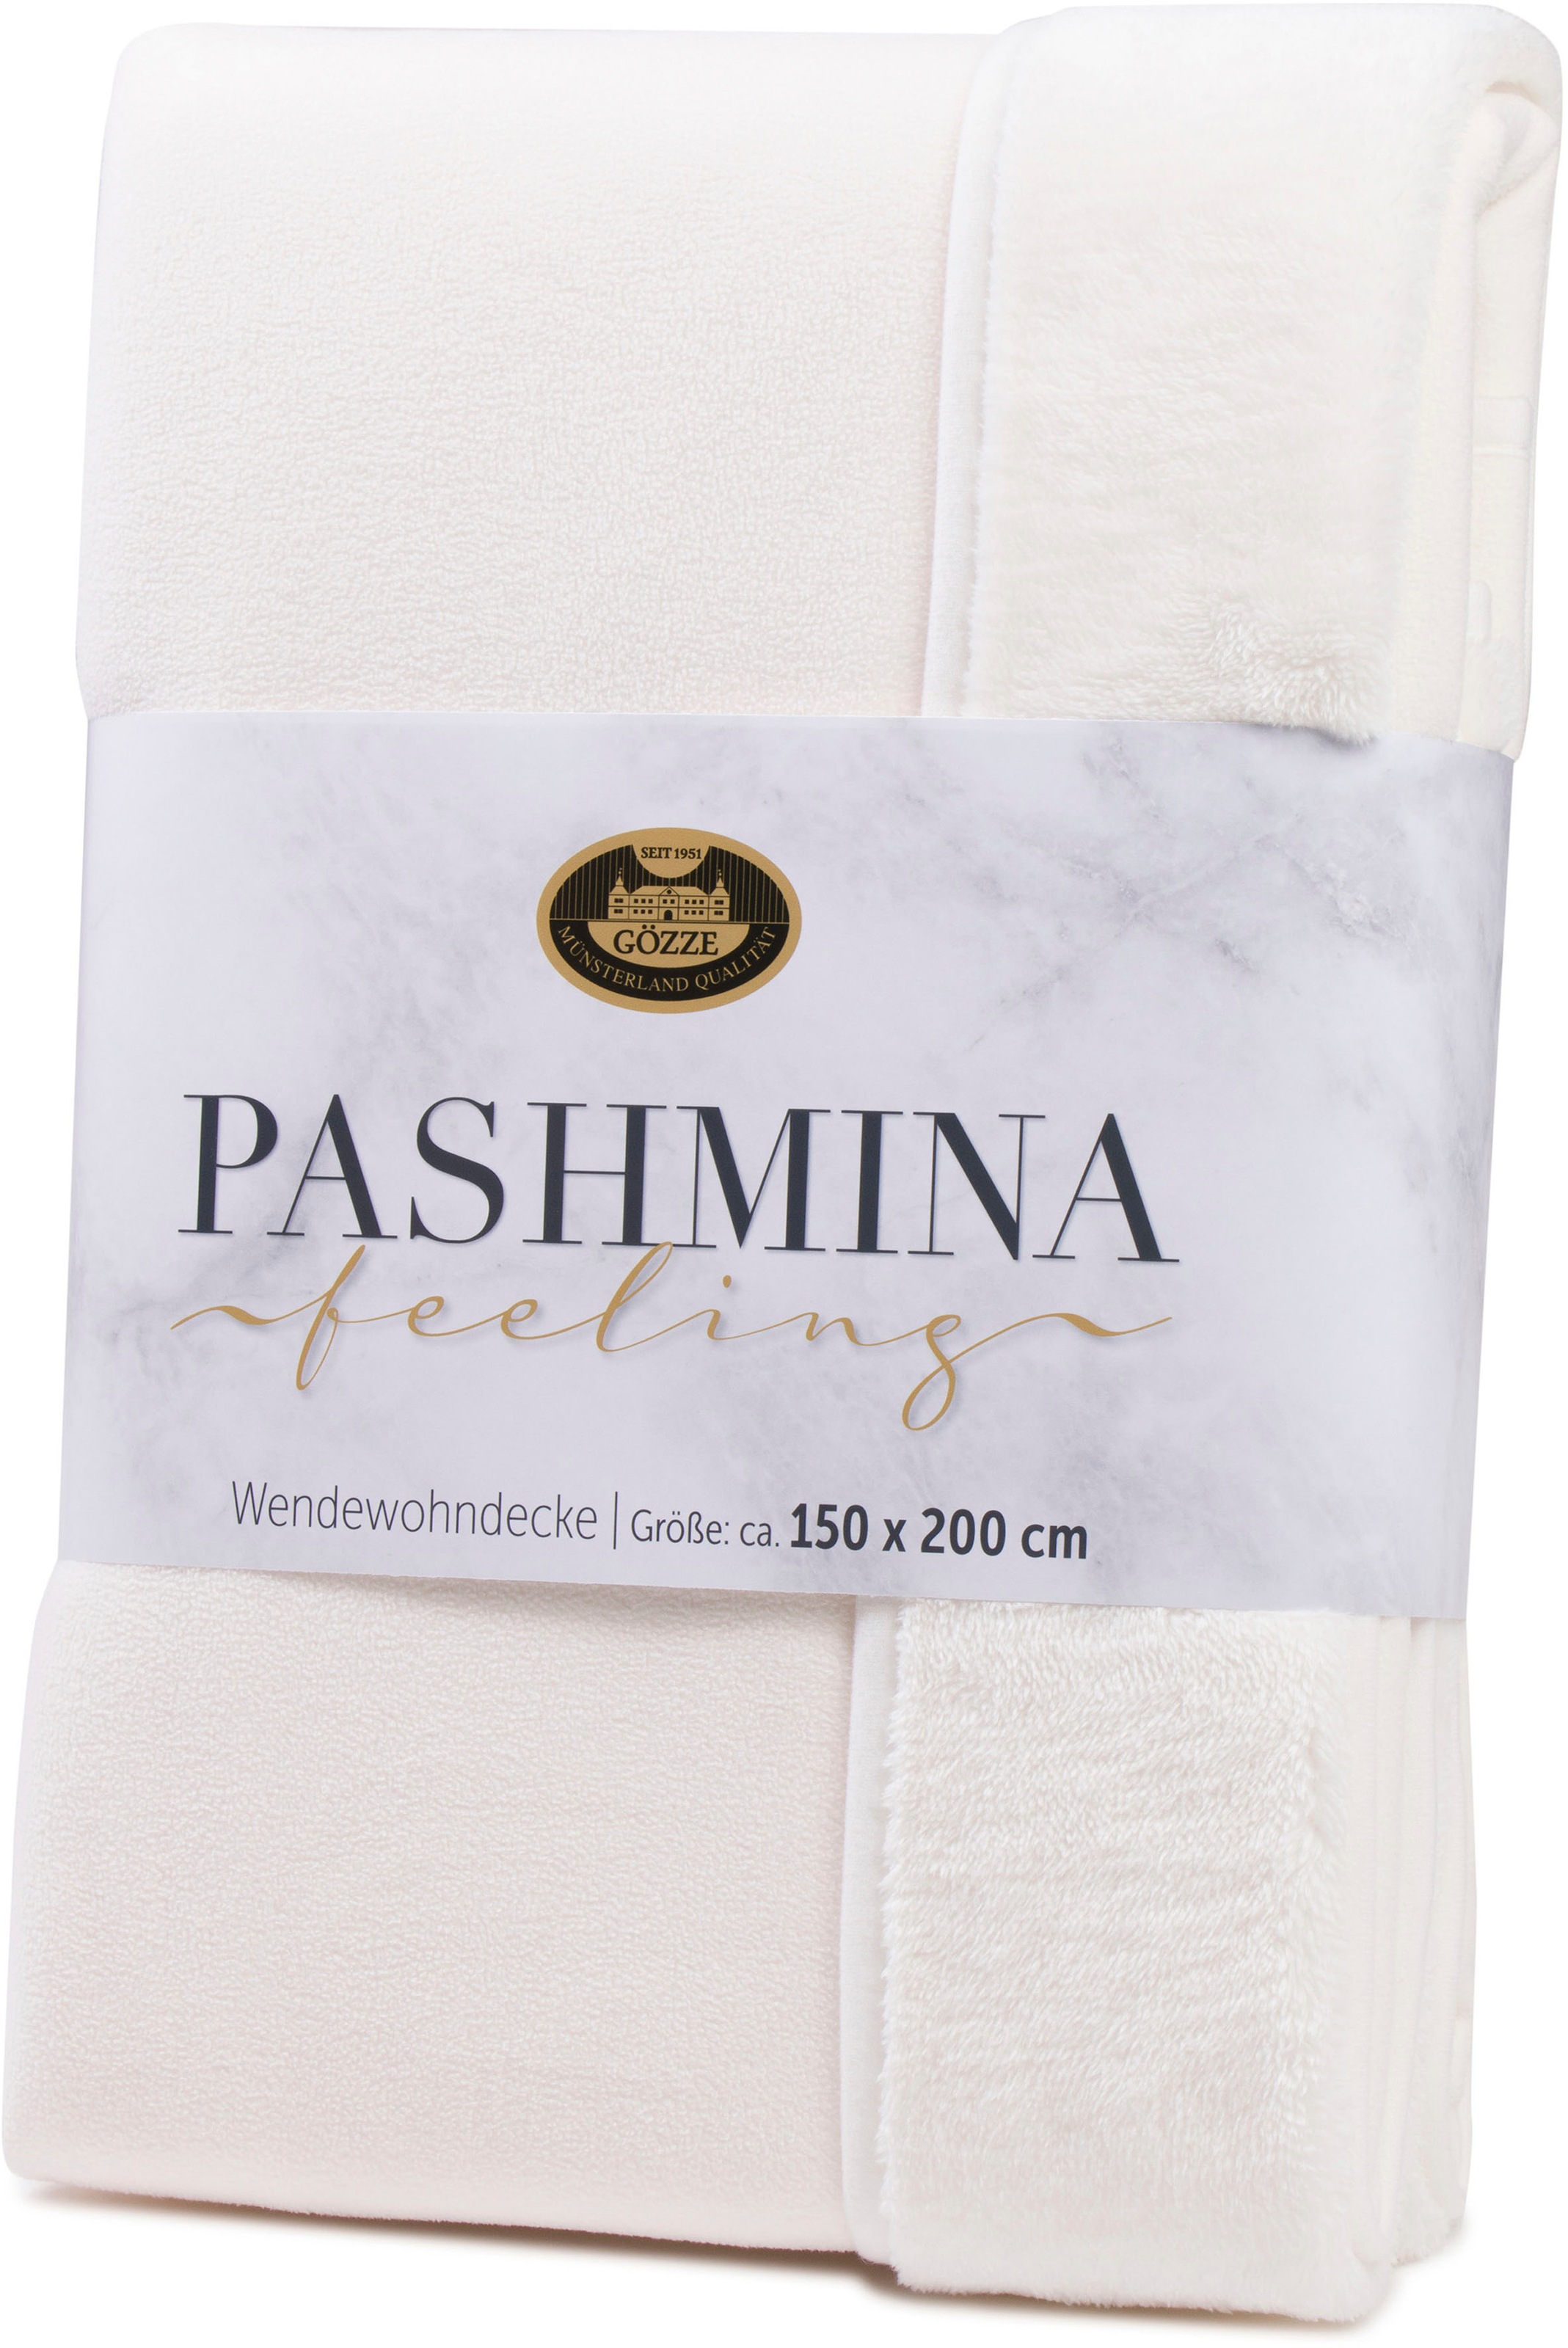 | »Pashmina BAUR Gözze Unterseite flauschig schlichte Wendewohndecke«, Wohndecke bestellen